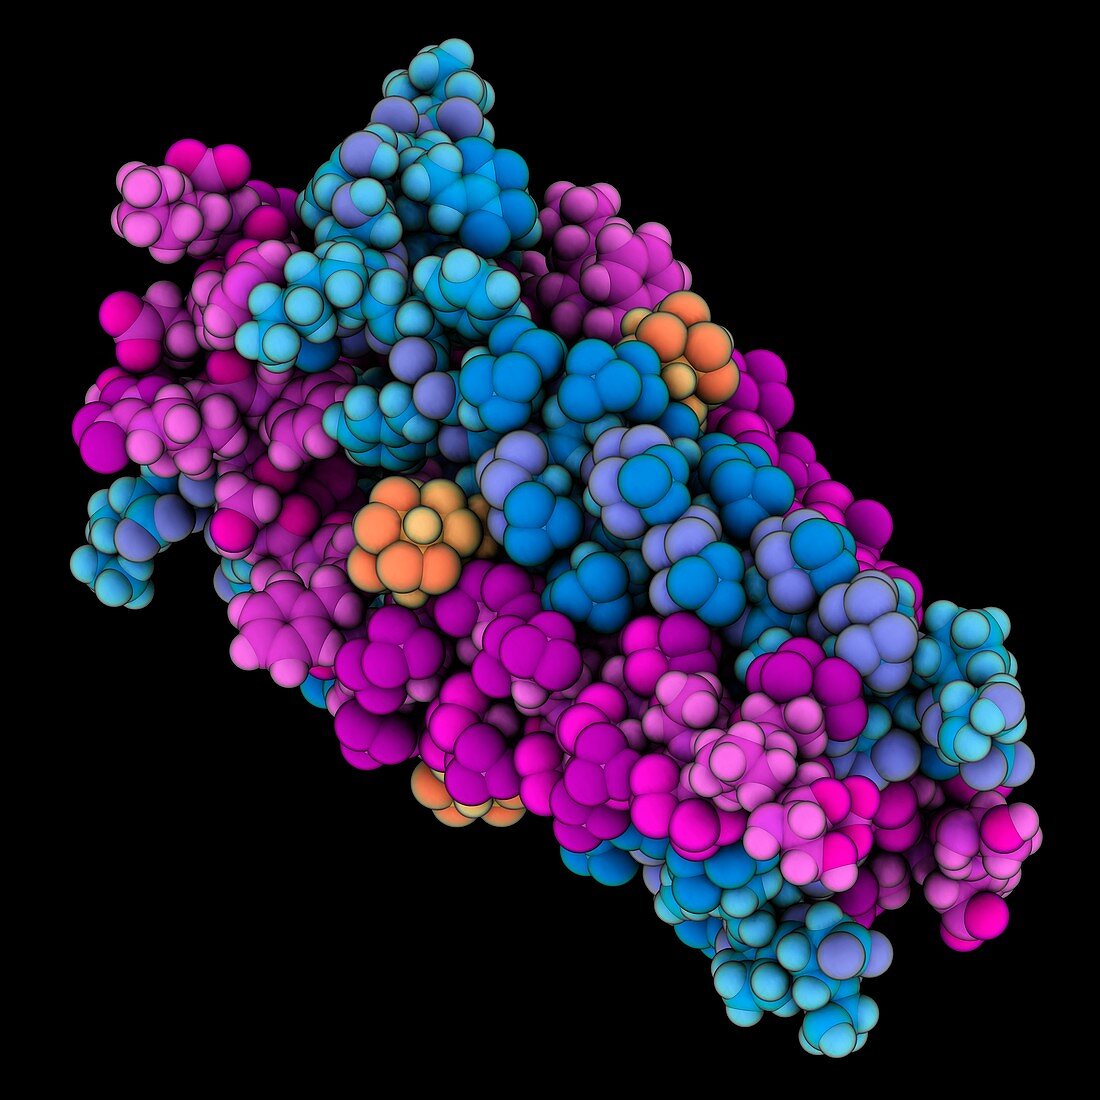 Influenza A proton channel complex